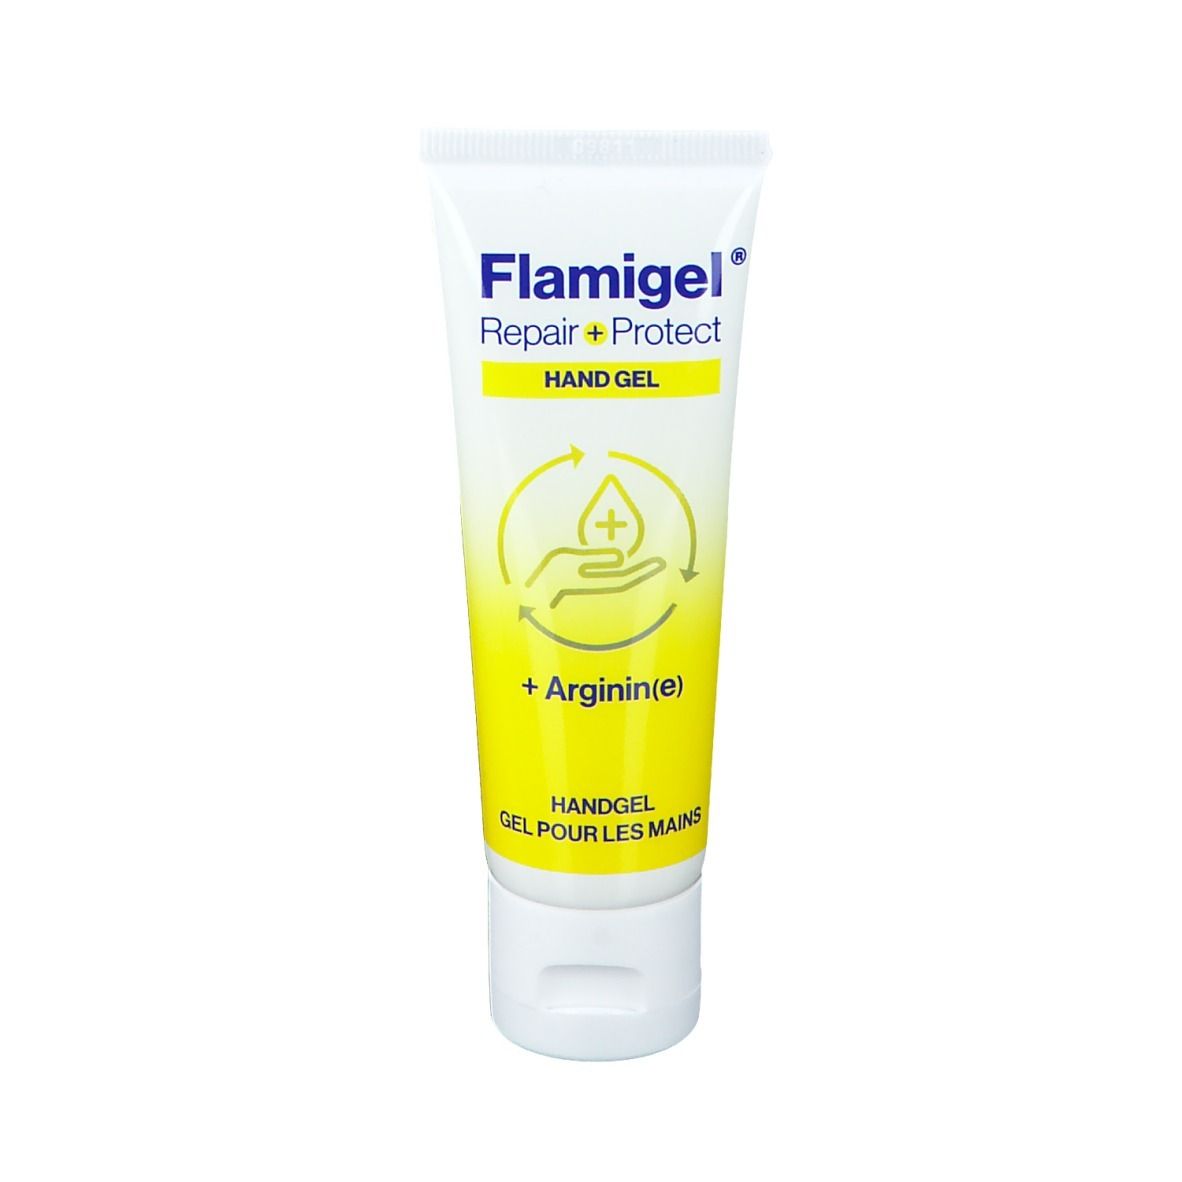 Image of Flamigel® Repair + Protect Hand Gel